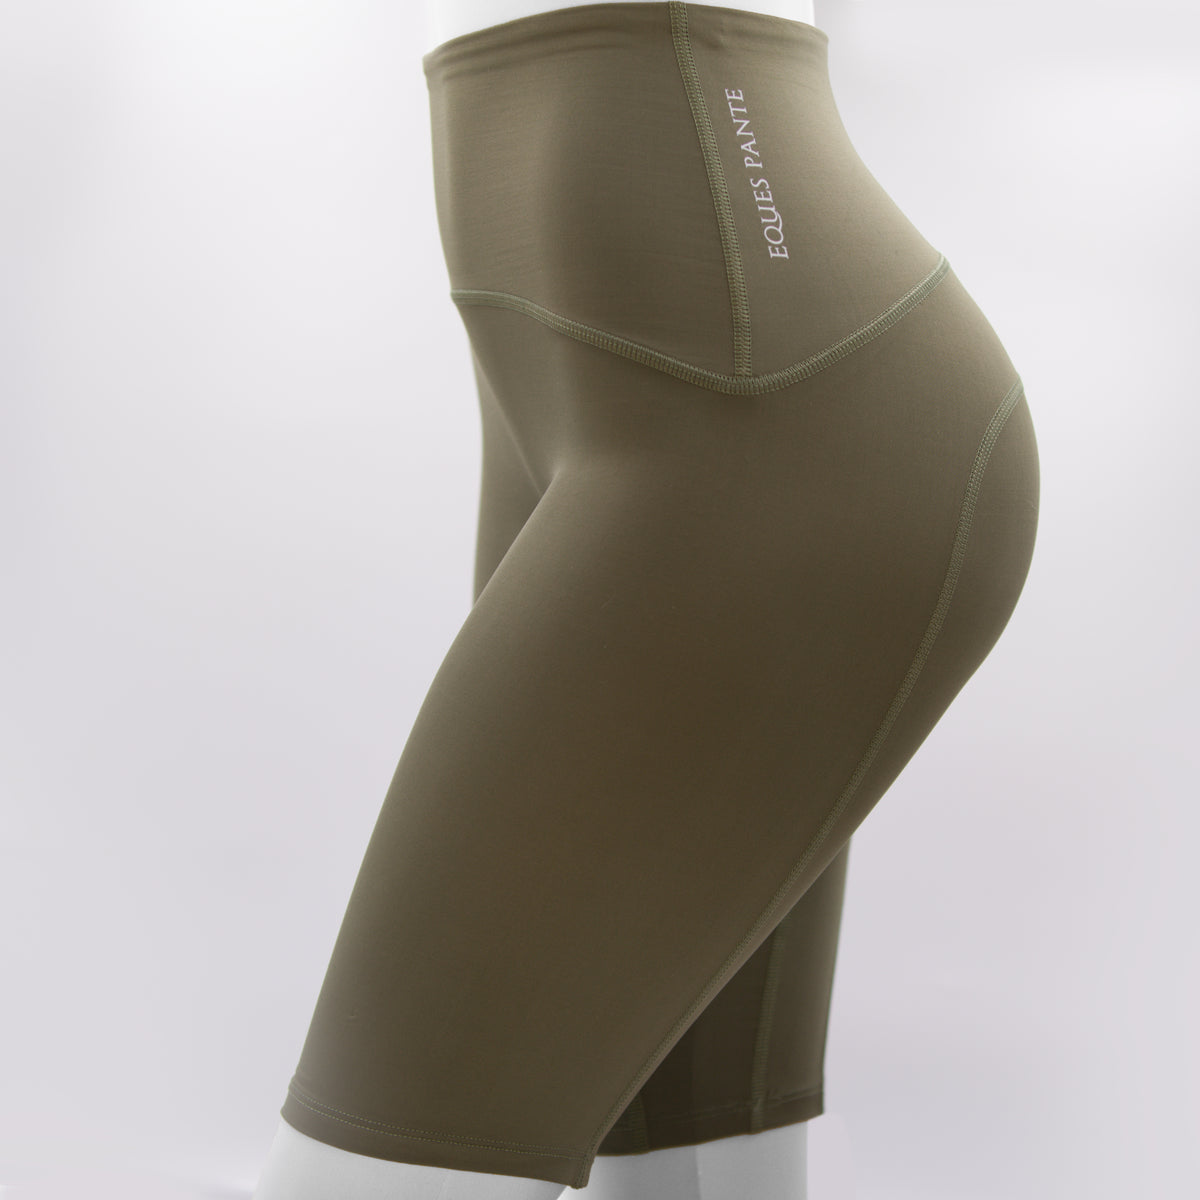 NIXI Body Sarah Sporty Low Cut Underwear – GS Equestrian